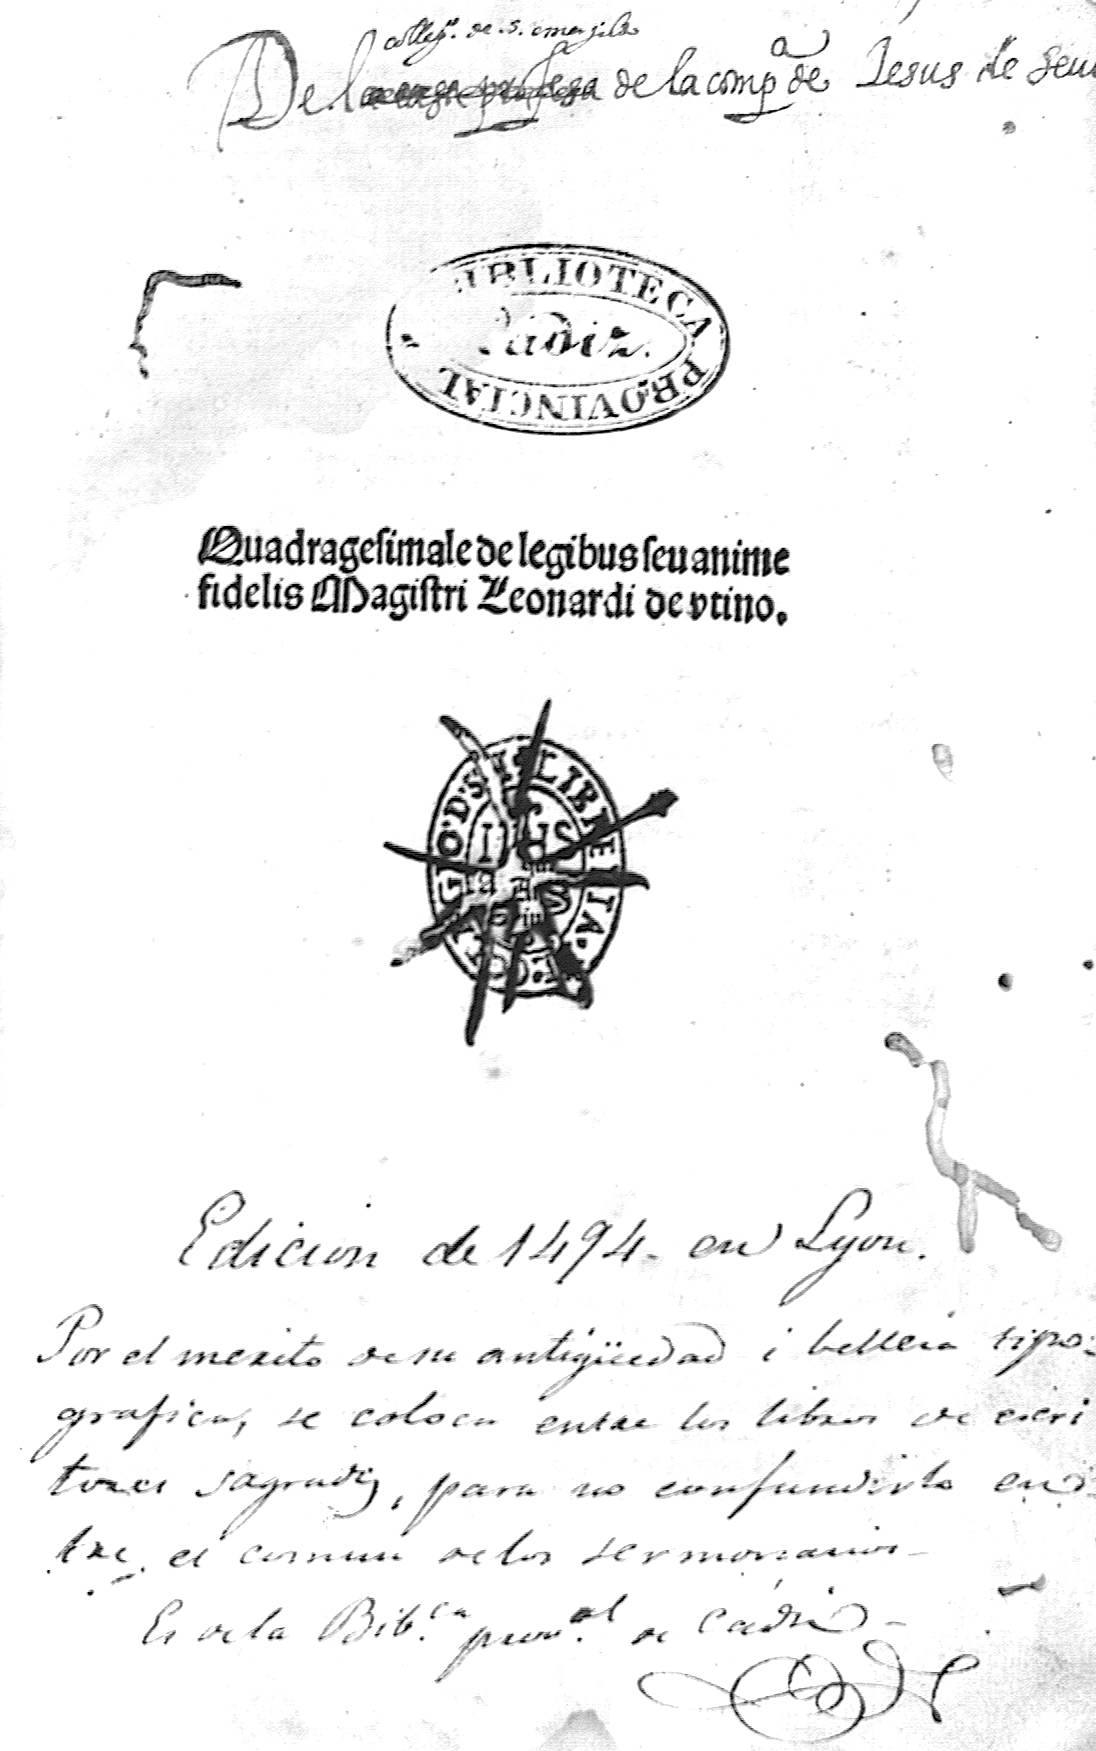 Quadragesimale de legibus sevanime fidelis Magistri Leonarsi de utino